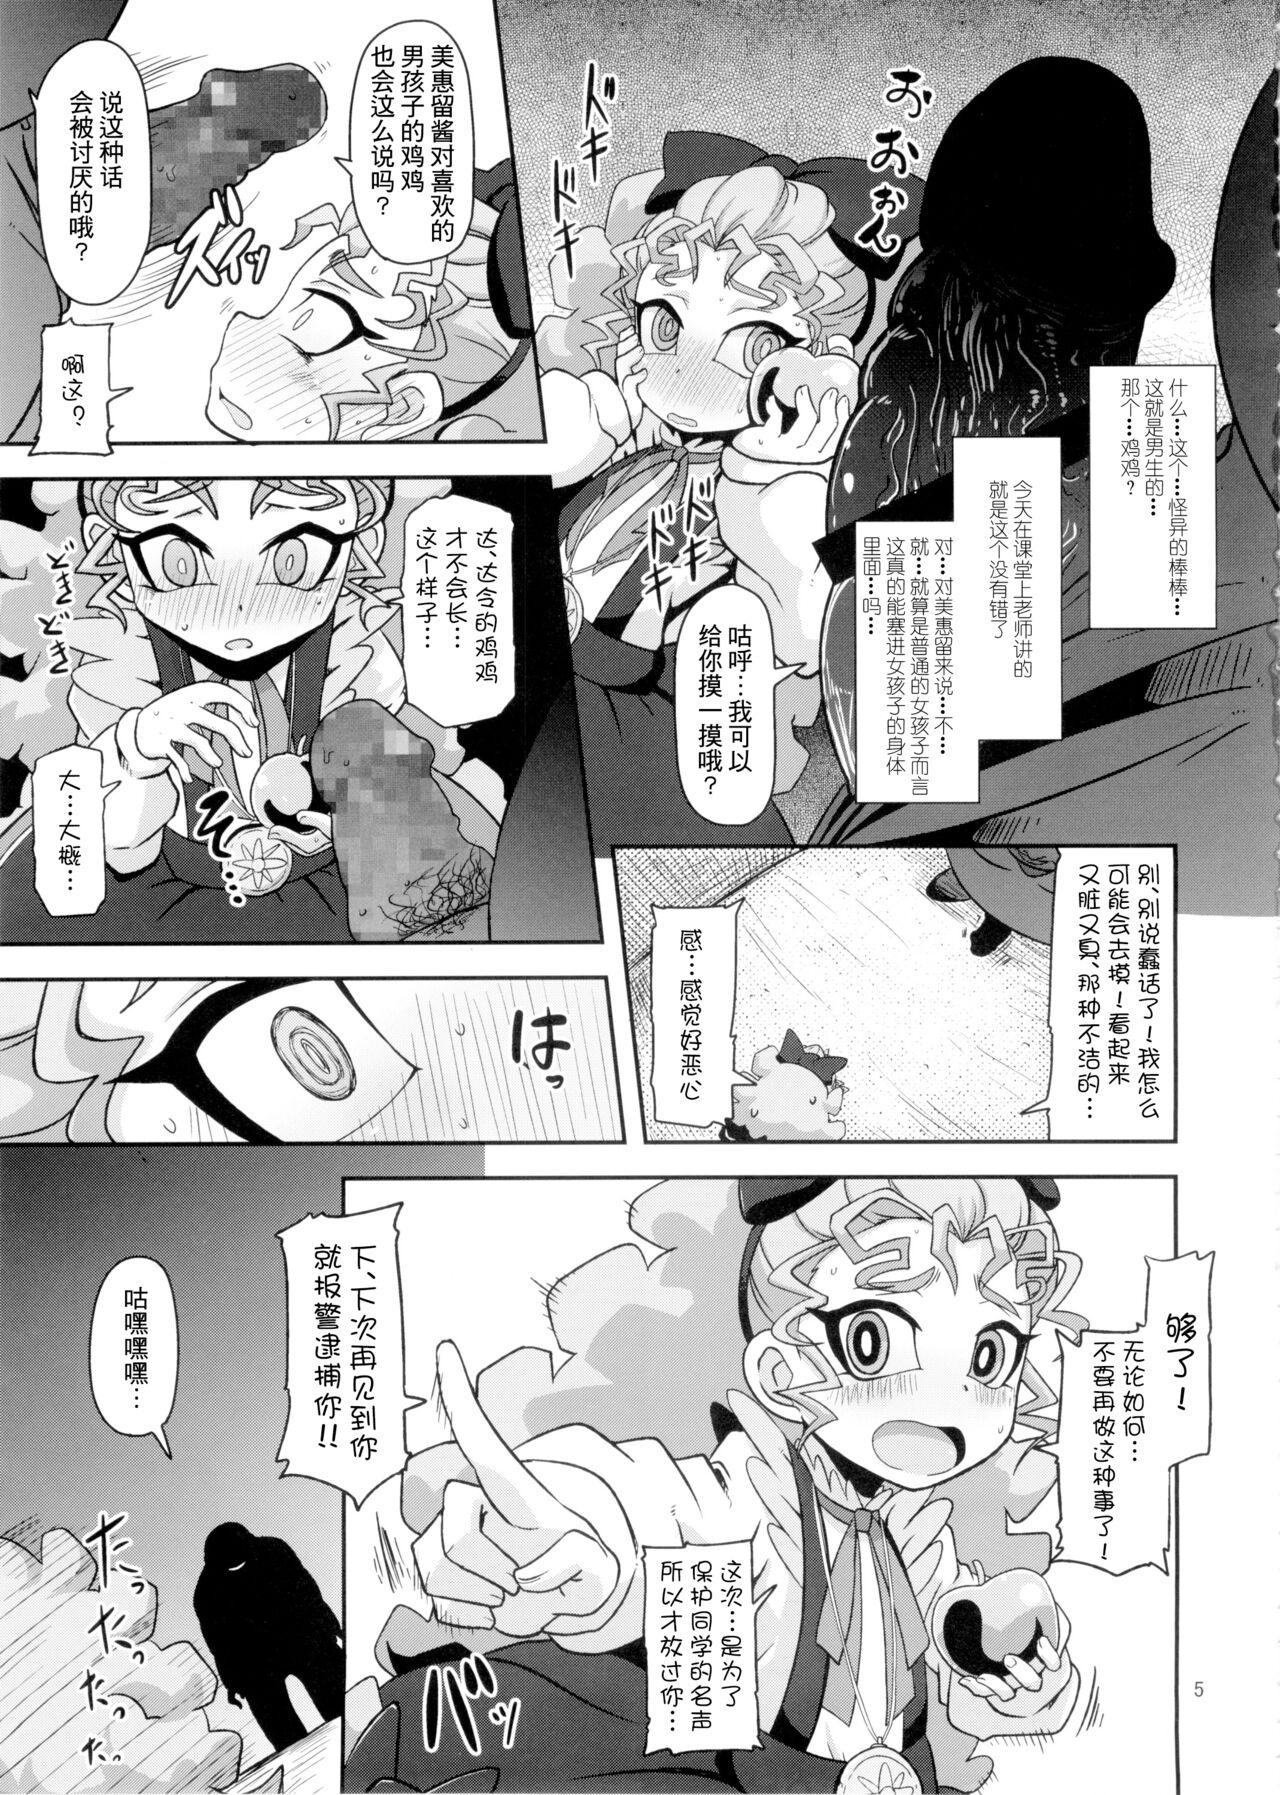 Girl Get Fuck Kantsuu Machi Hatsukoi Otome - Yu gi oh arc v Tattoos - Page 4